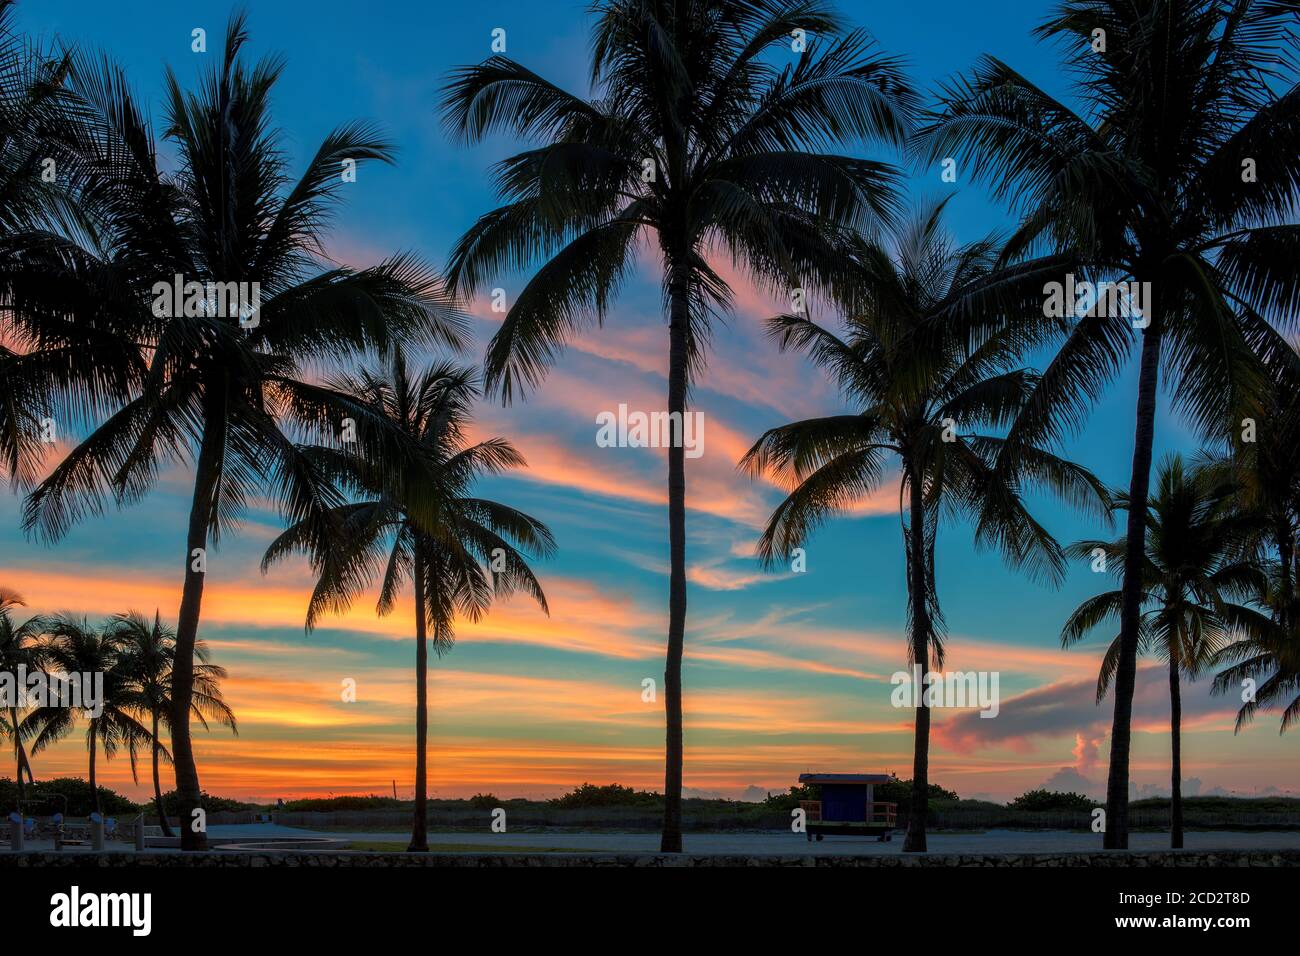 La silhouette delle palme in una splendida alba a Miami Beach, Florida Foto Stock